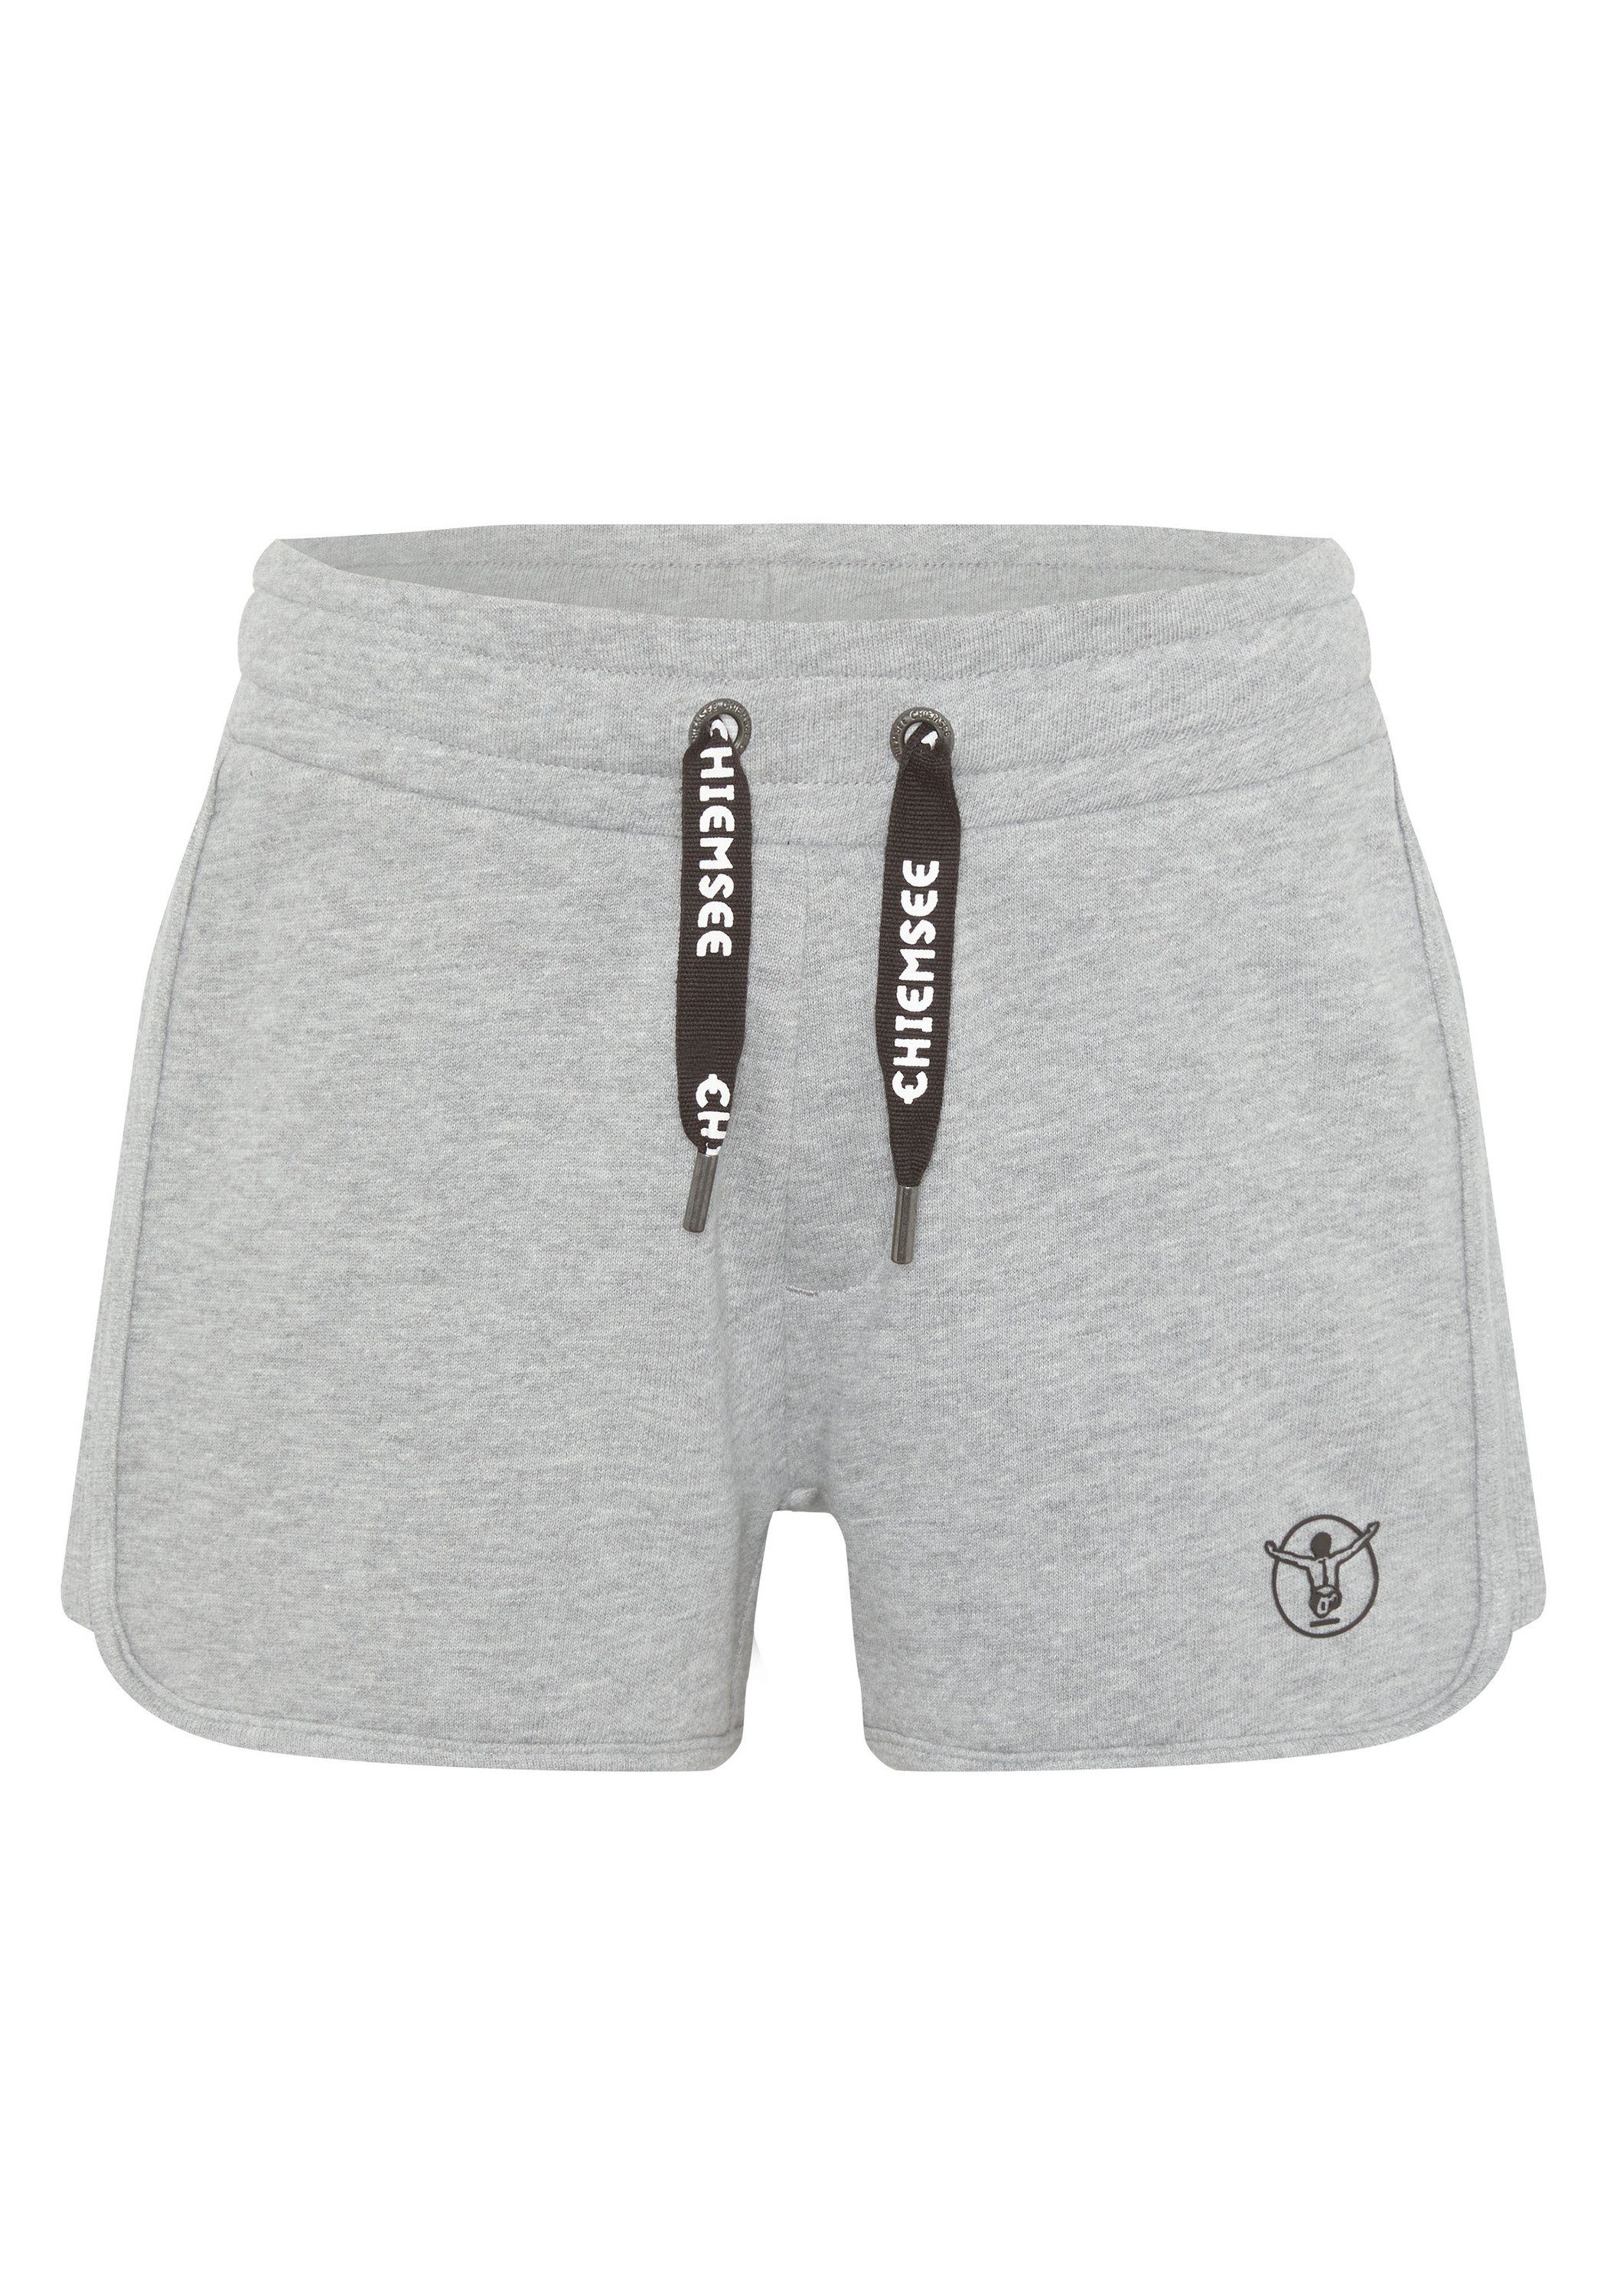 Chiemsee Sweatshorts Shorts mit Label-Details 1 17-4402M Neutral Gray Melange